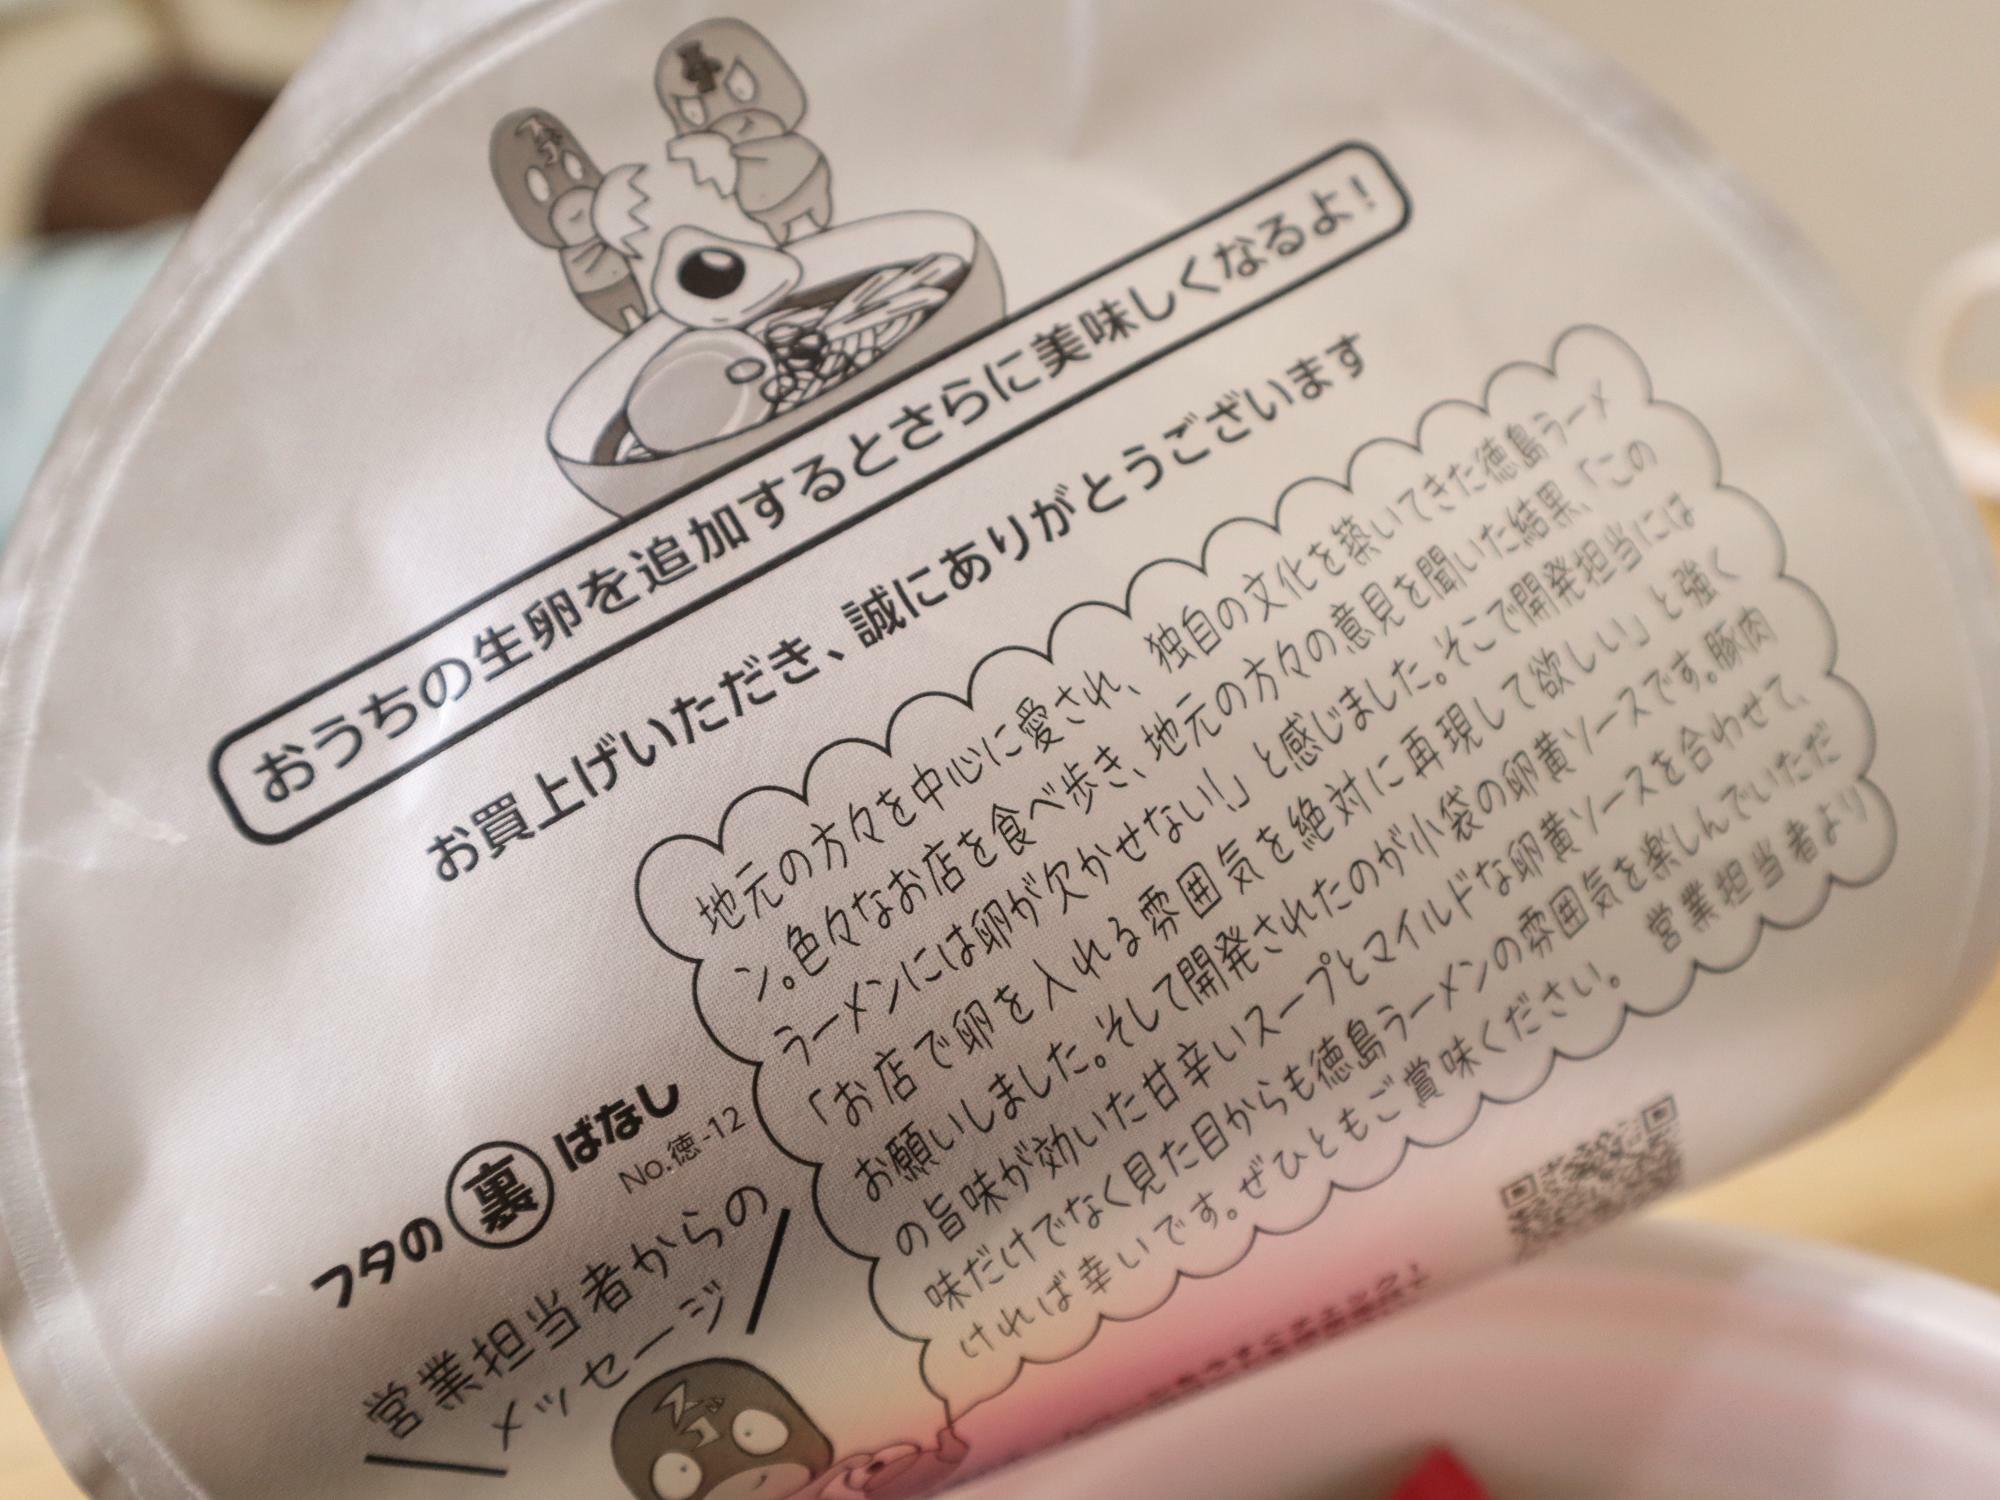 「ヤマダイ株式会社」のニュータッチ 凄麺 「徳島ラーメン濃厚醤油とんこつ味」。